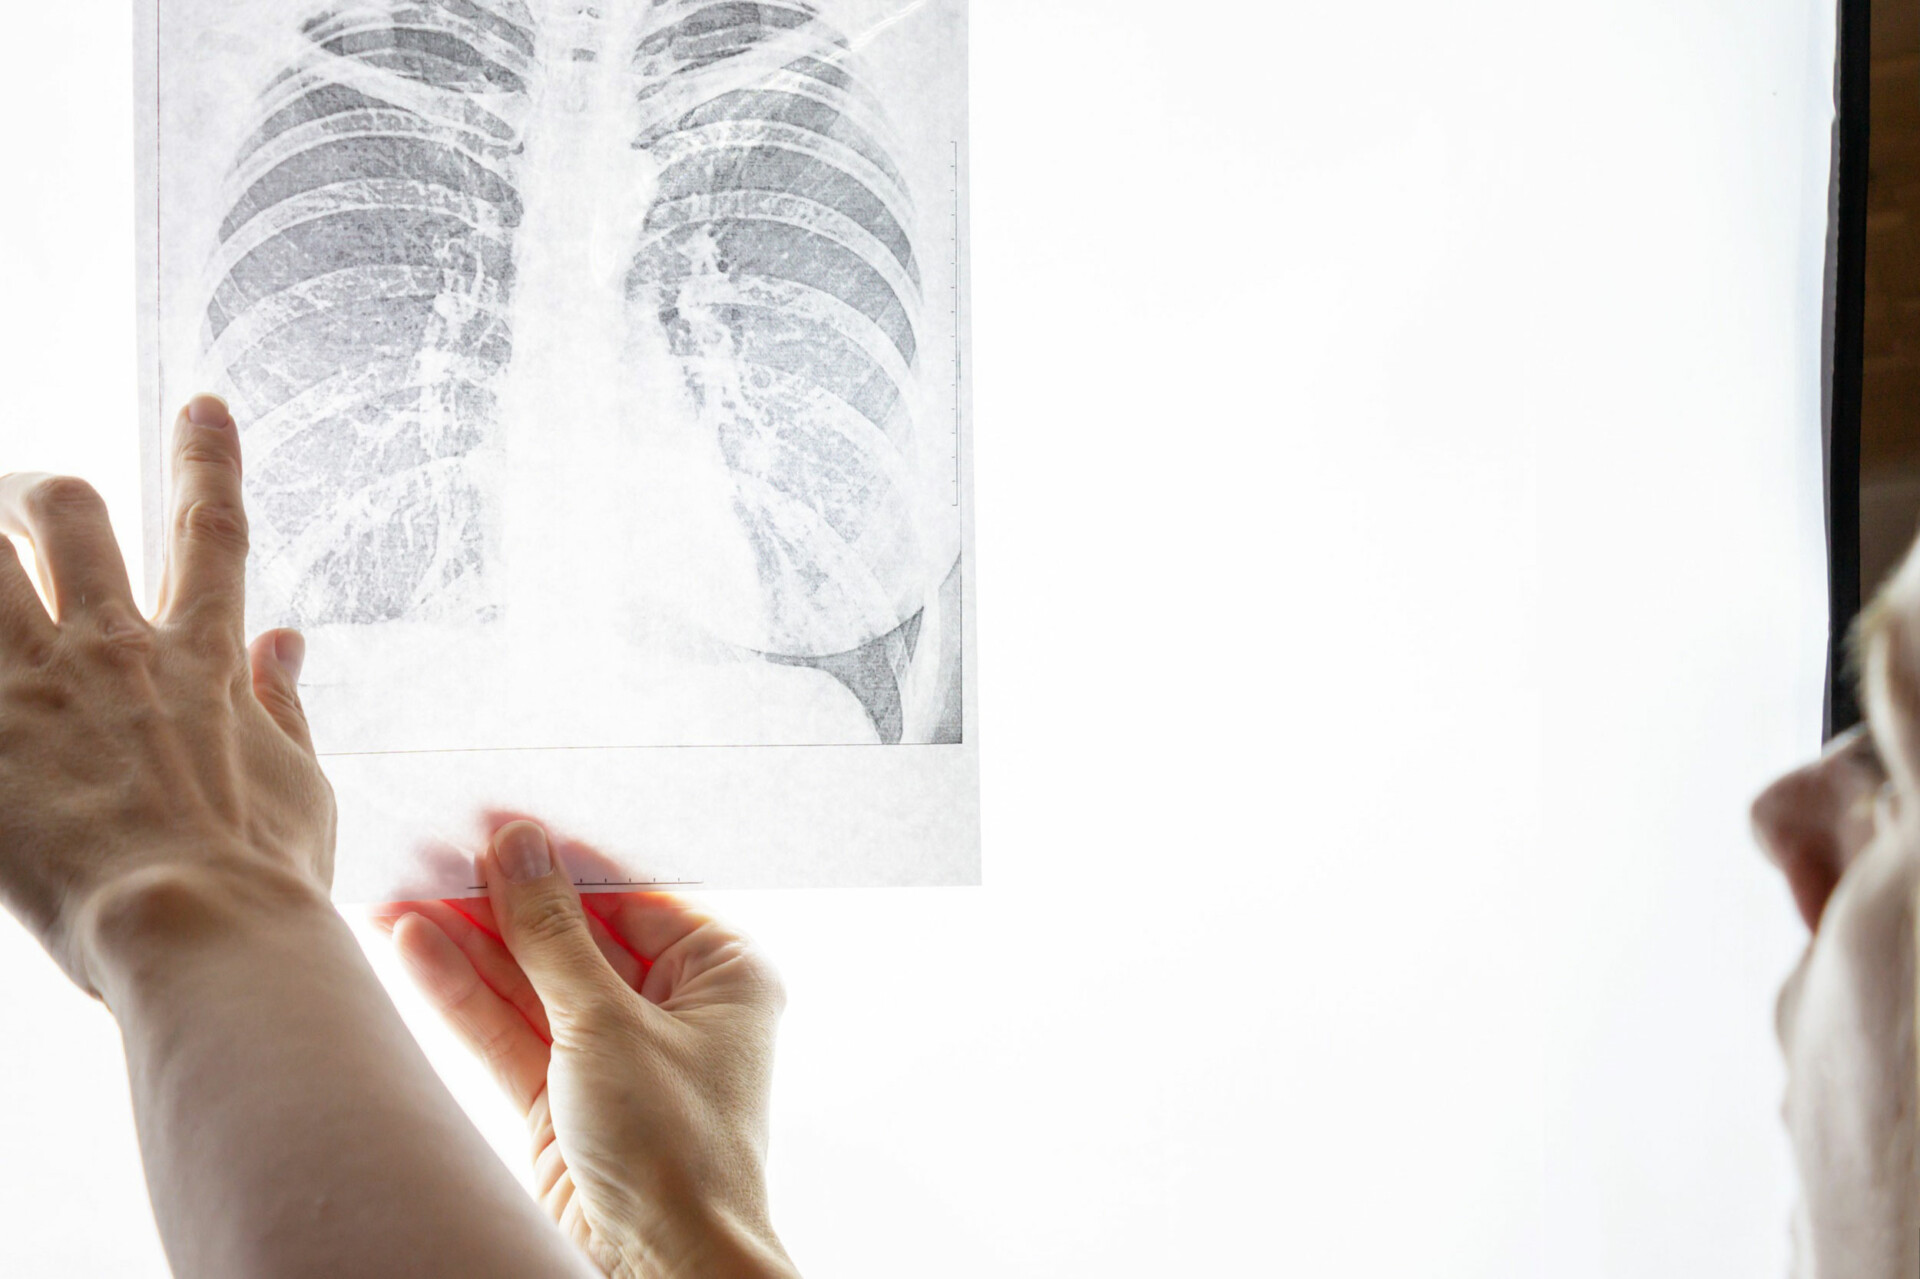 Καρκίνος του πνεύμονα © 123rf